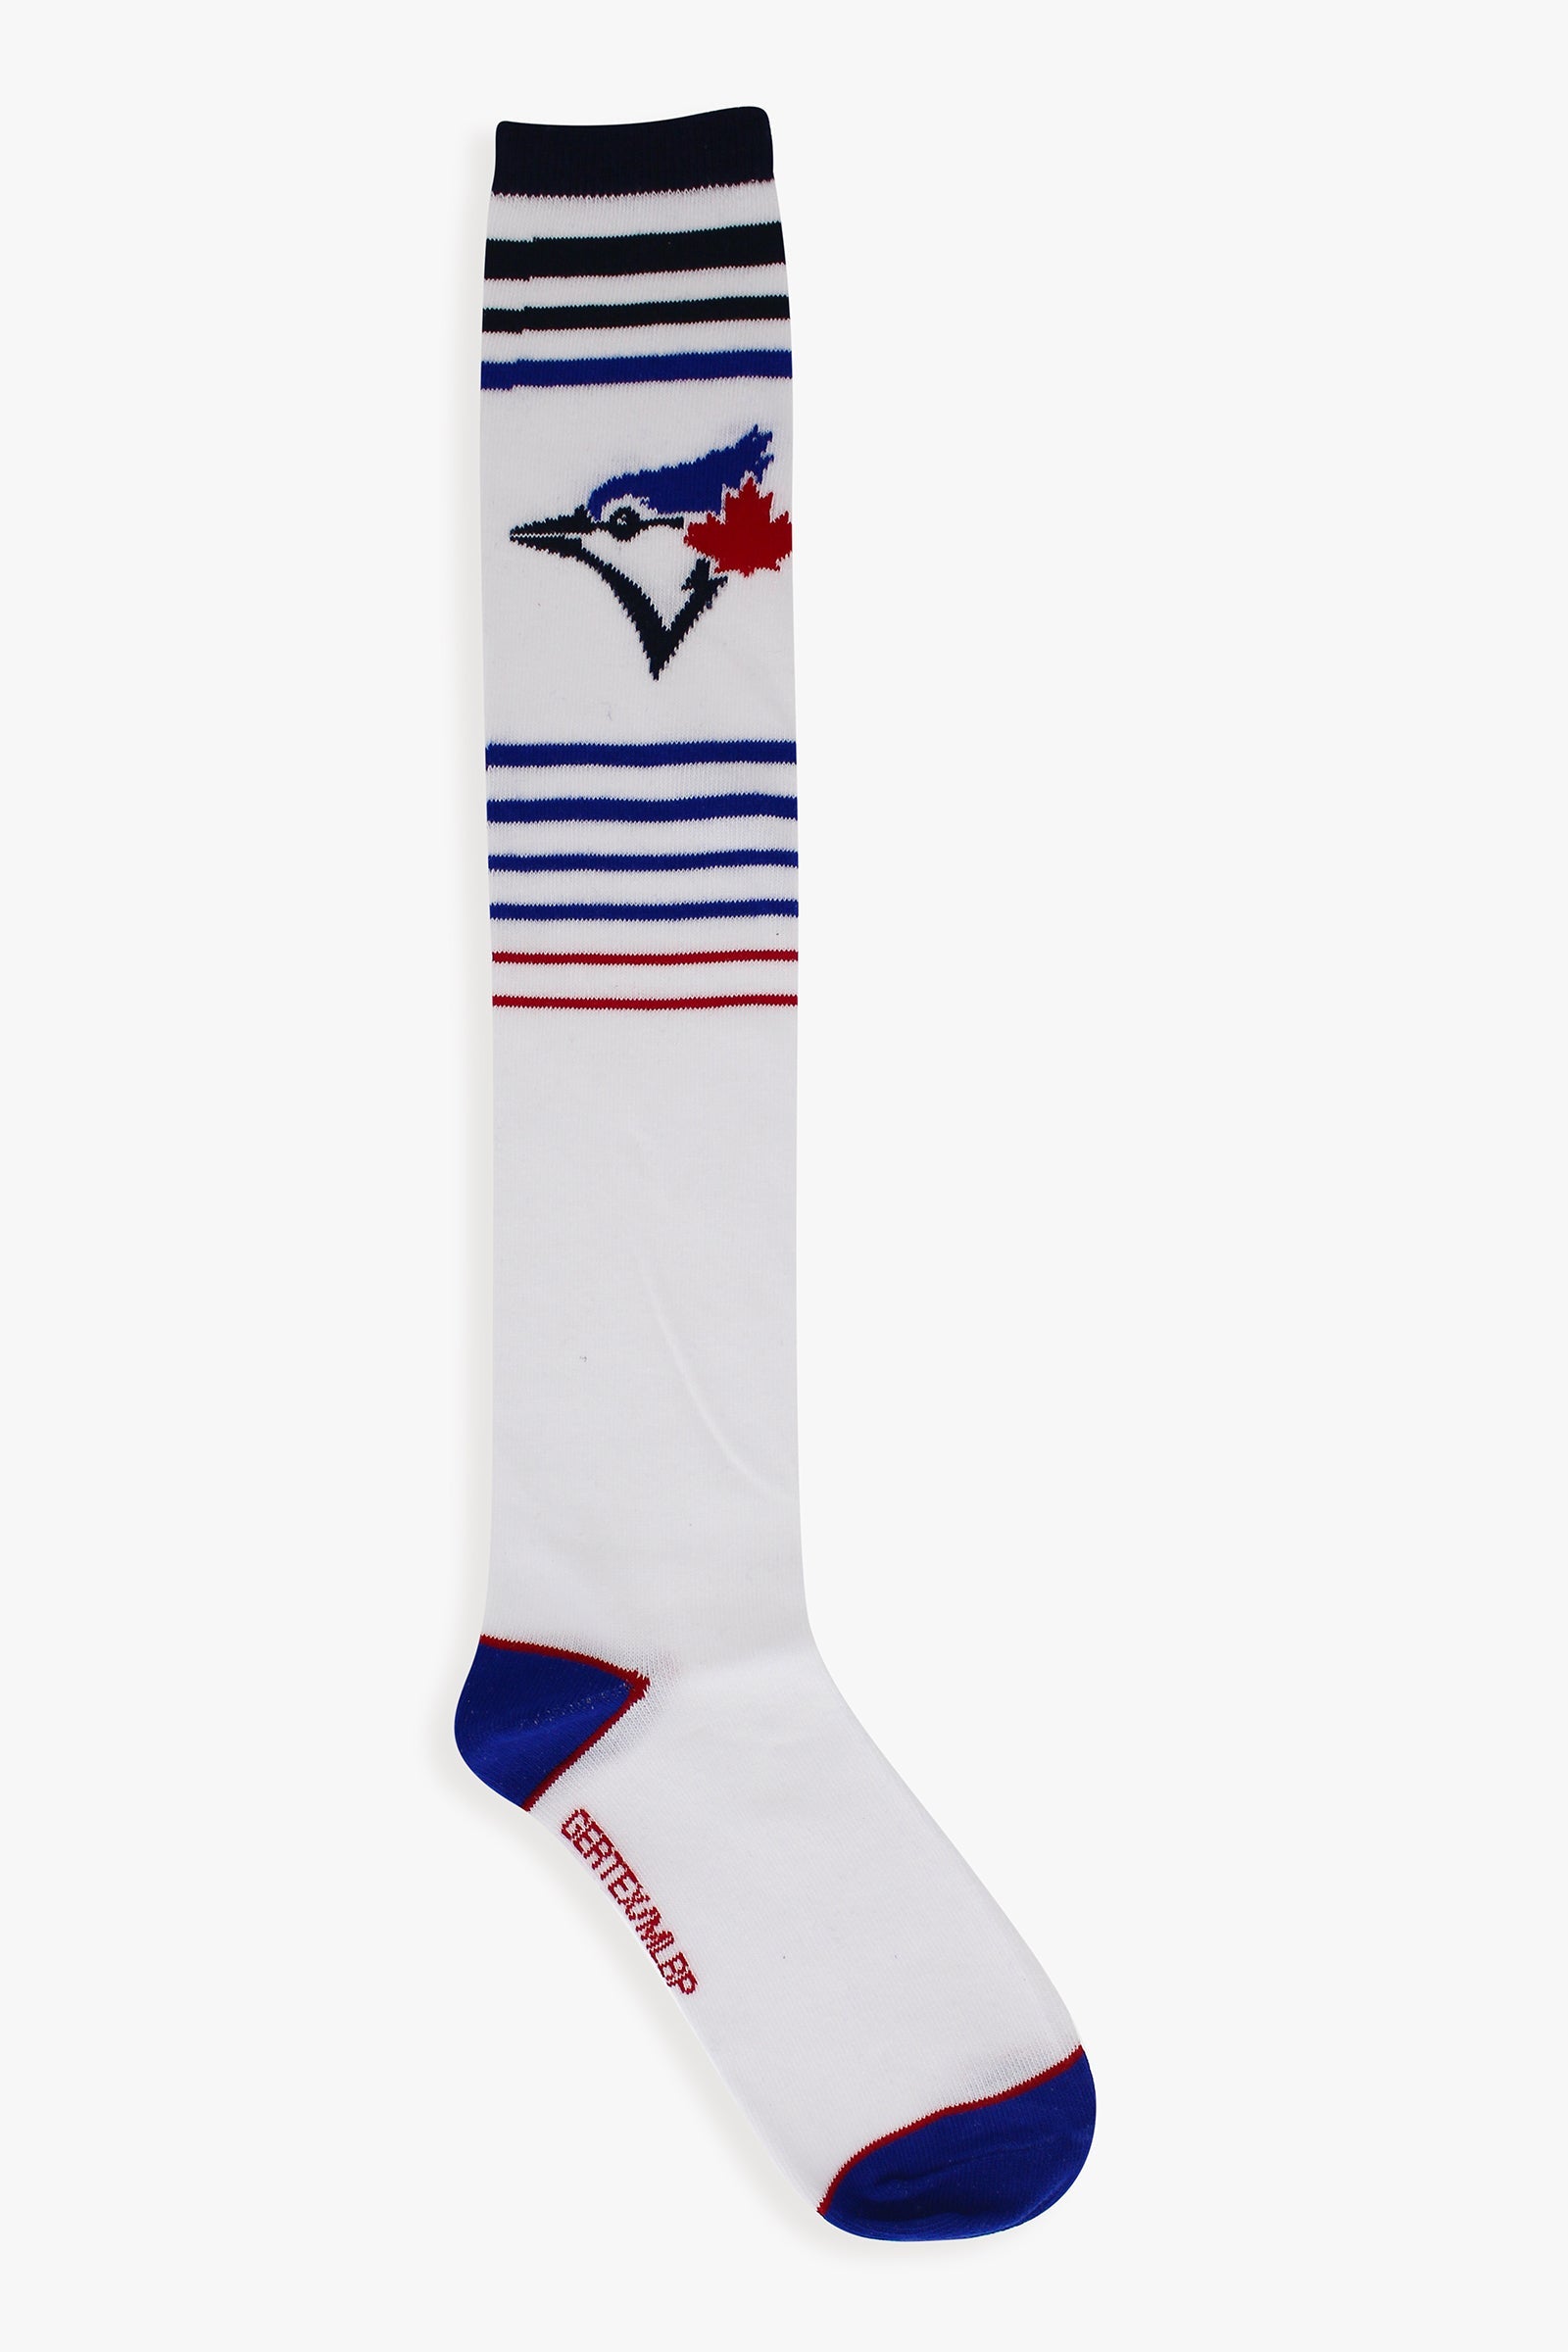 Gertex MLB Toronto Blue jays Ladies Knee High Socks